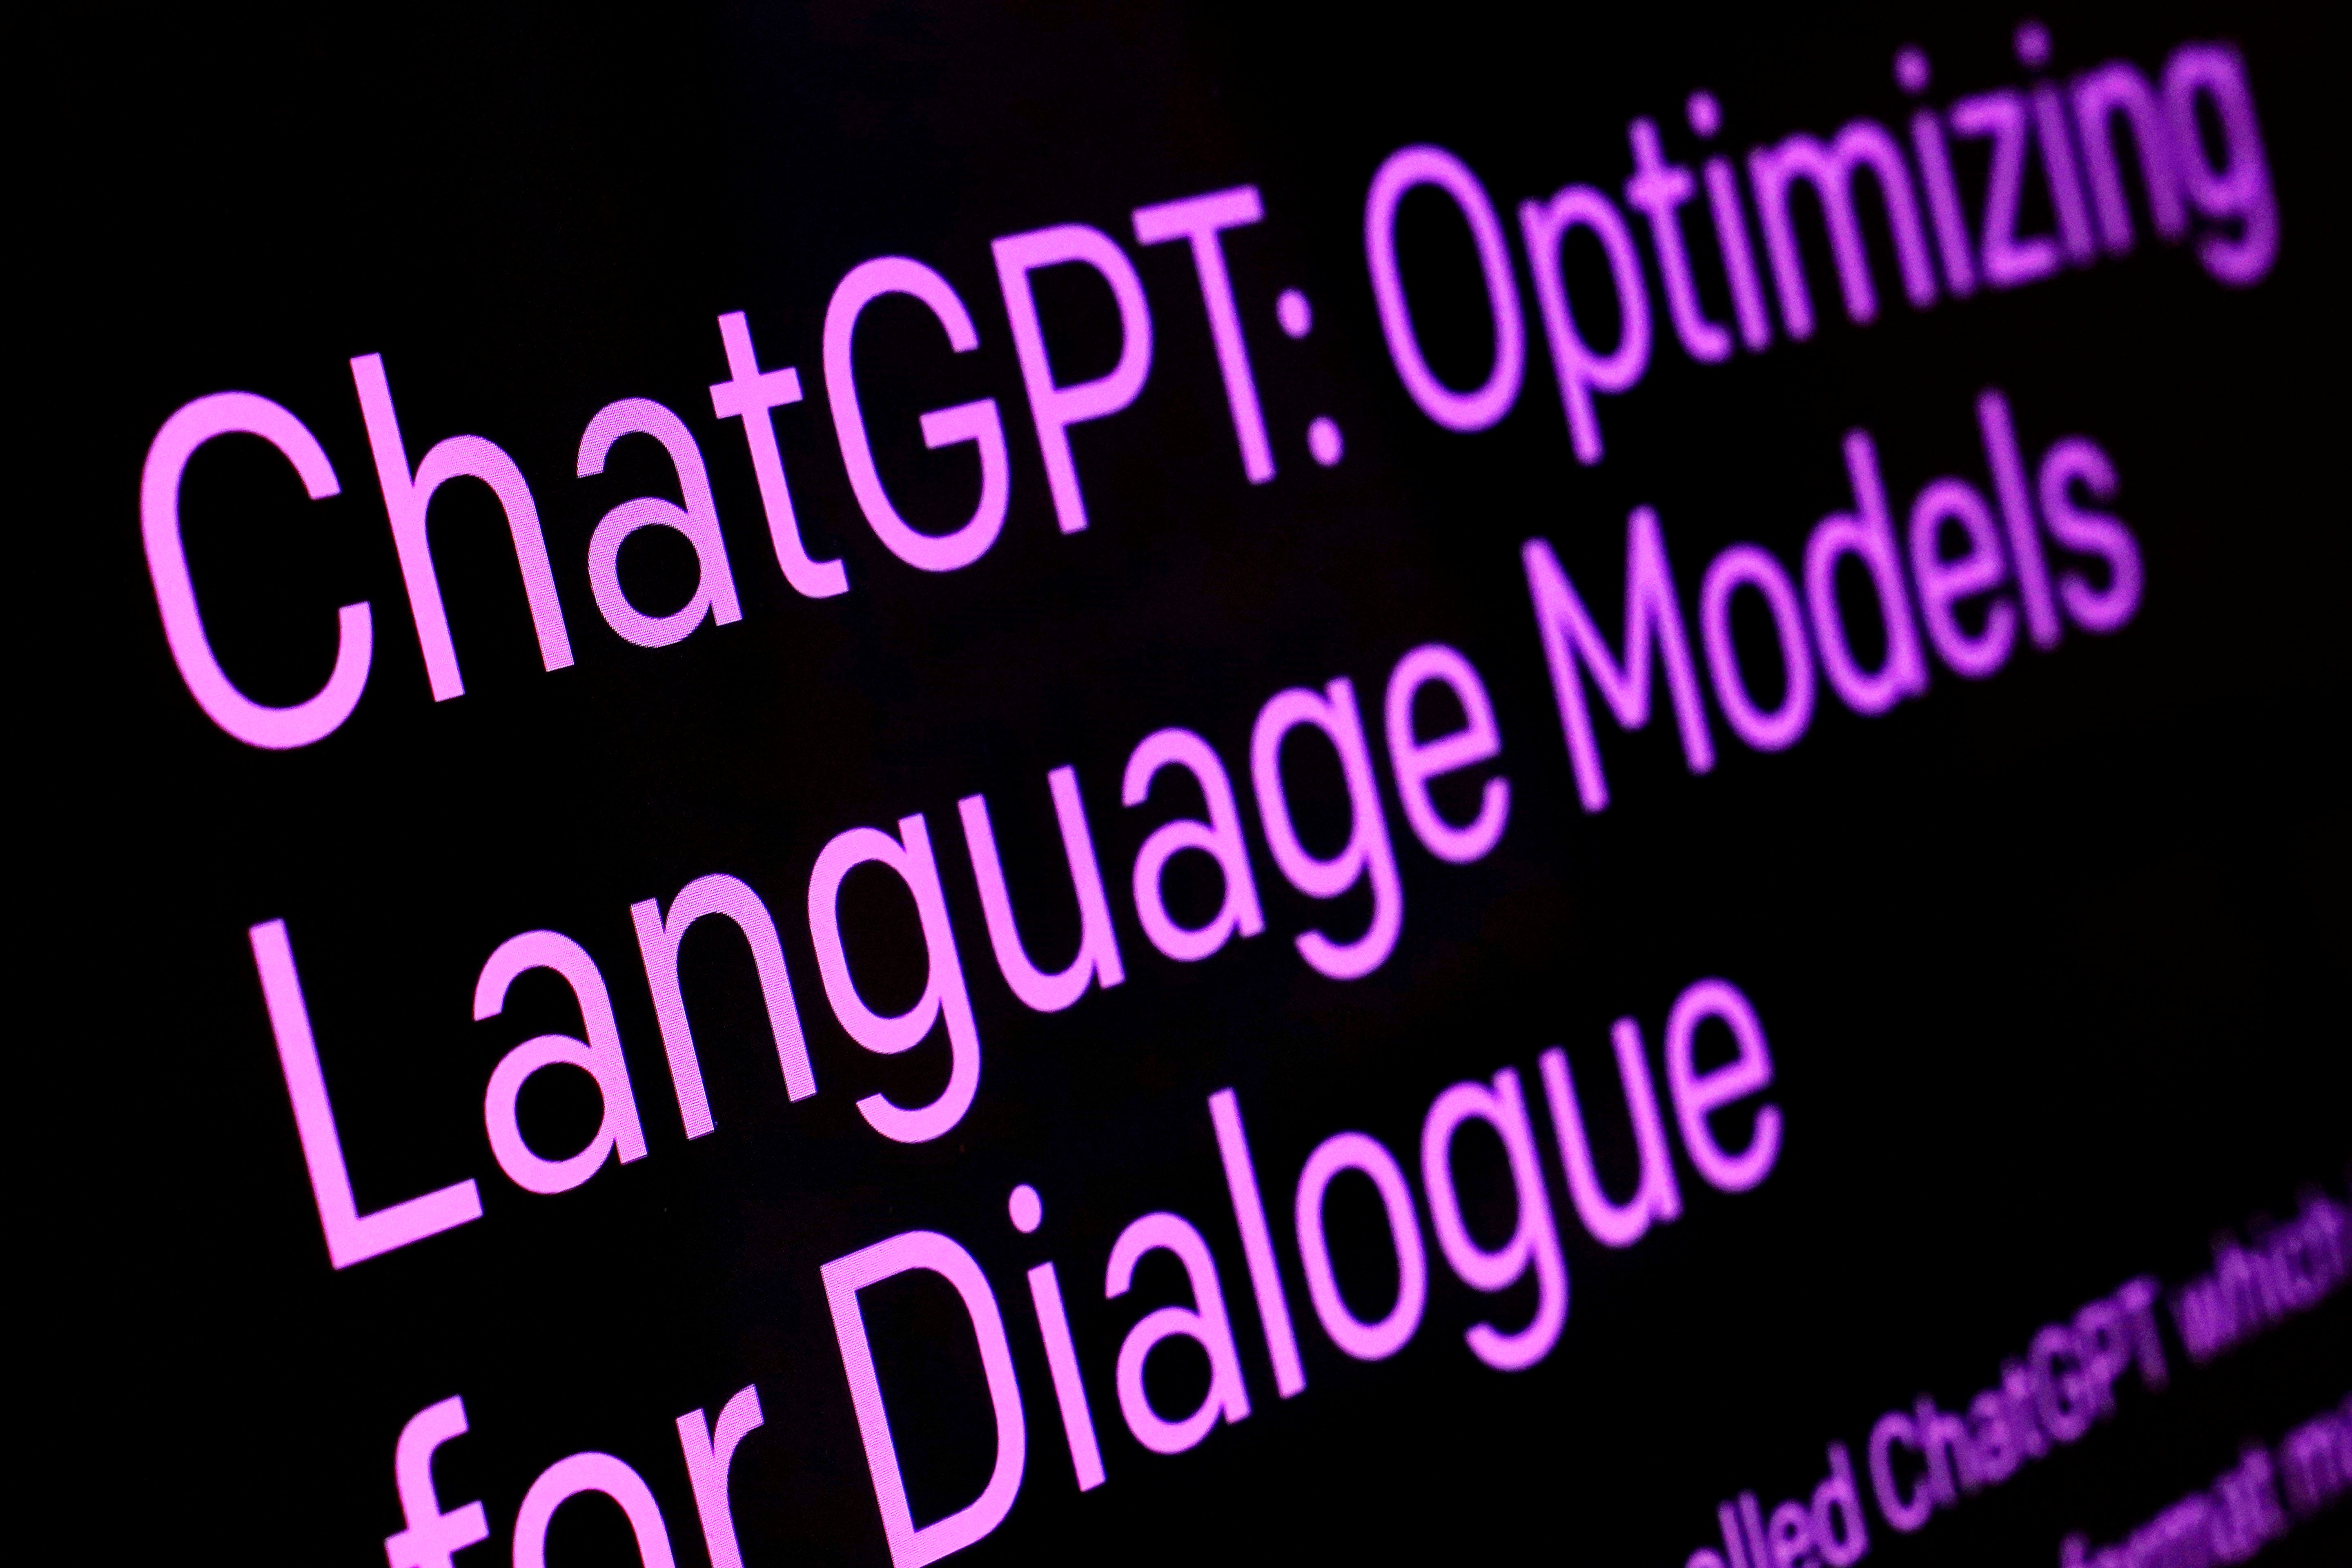 Los investigadores identificaron una serie de características clave en el estilo de escritura de ChatGPT